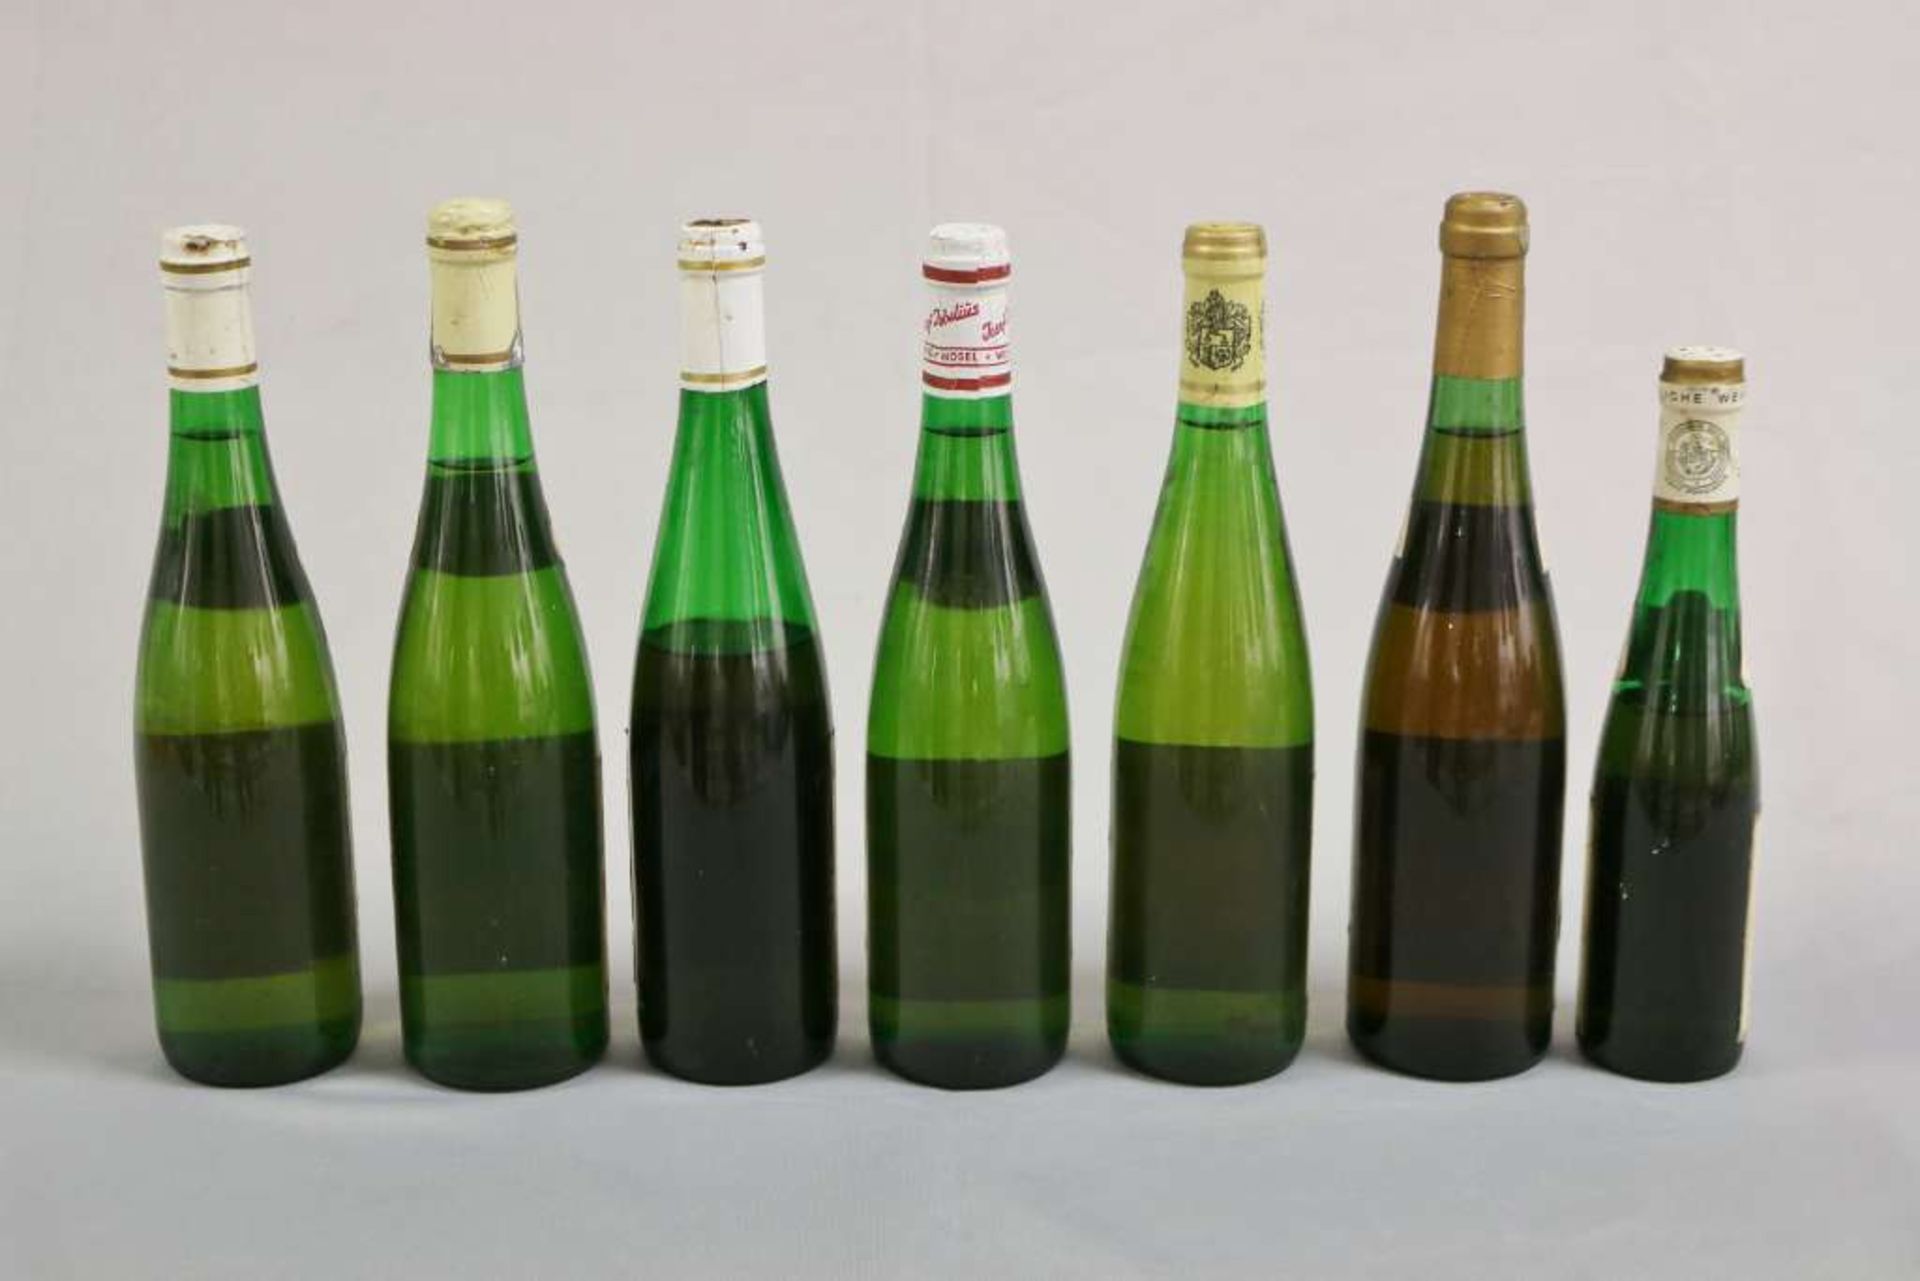 Weißwein u. Süßwein, 7 Flaschen, Mosel-Saar-Ruwer: Merler Königslay und Adler 1961 Beerenausleses; - Image 2 of 2